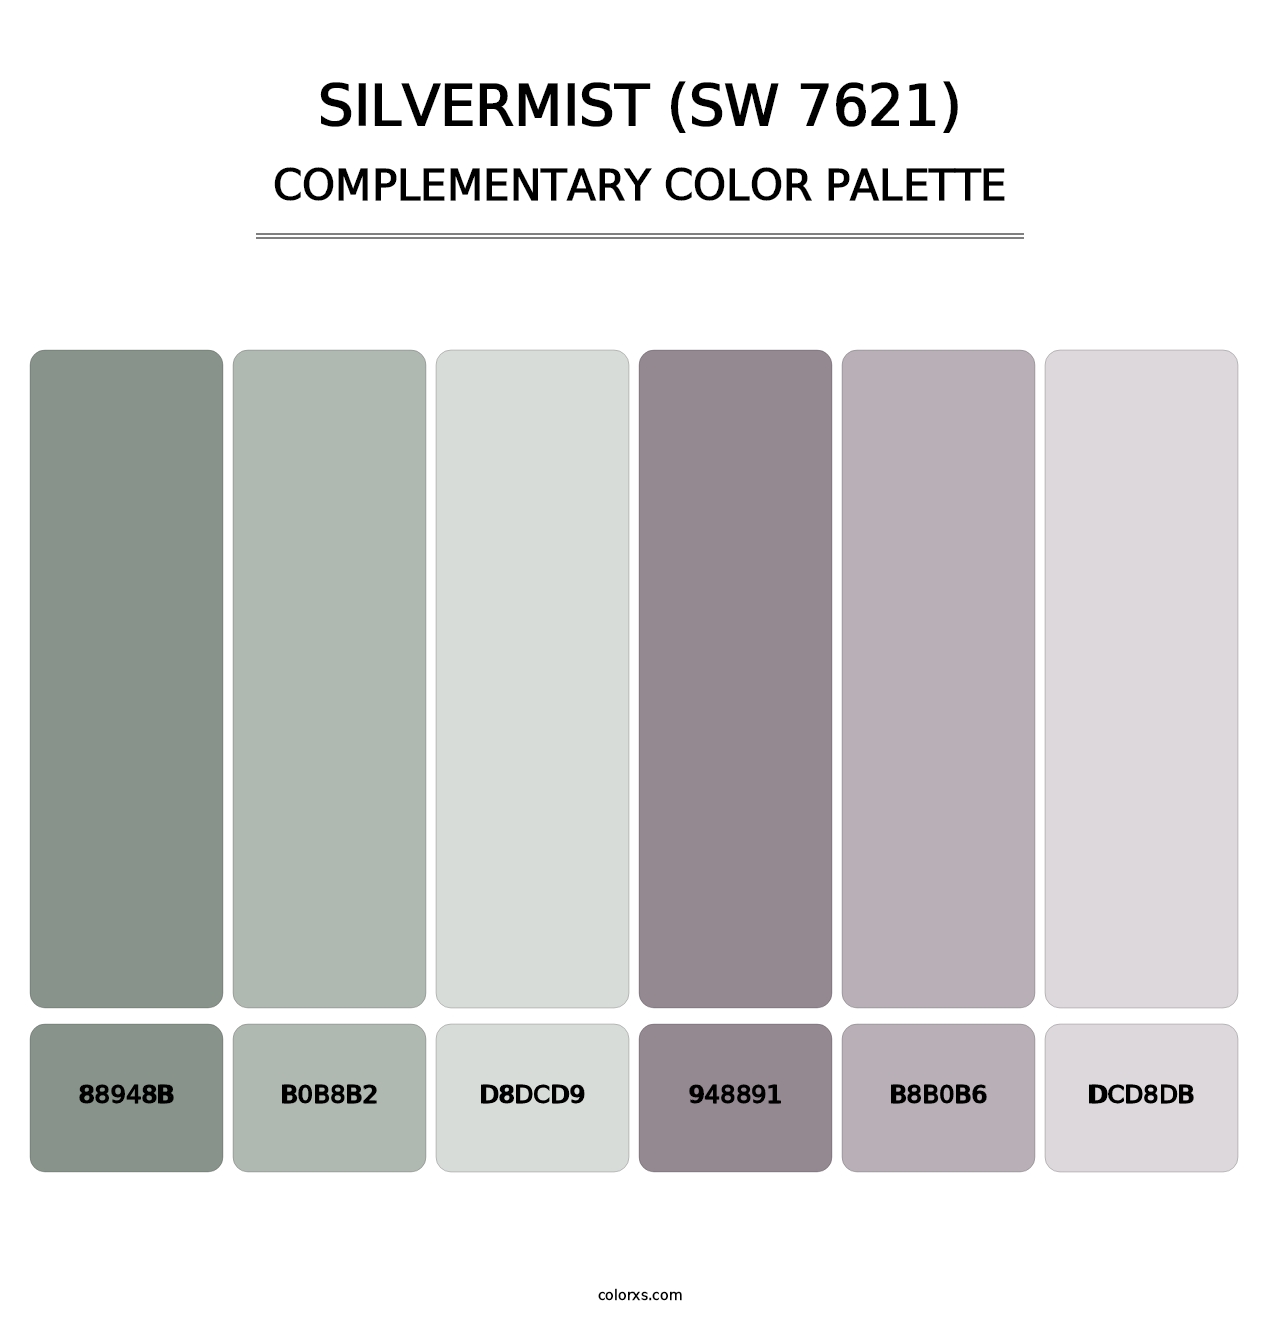 Silvermist (SW 7621) - Complementary Color Palette